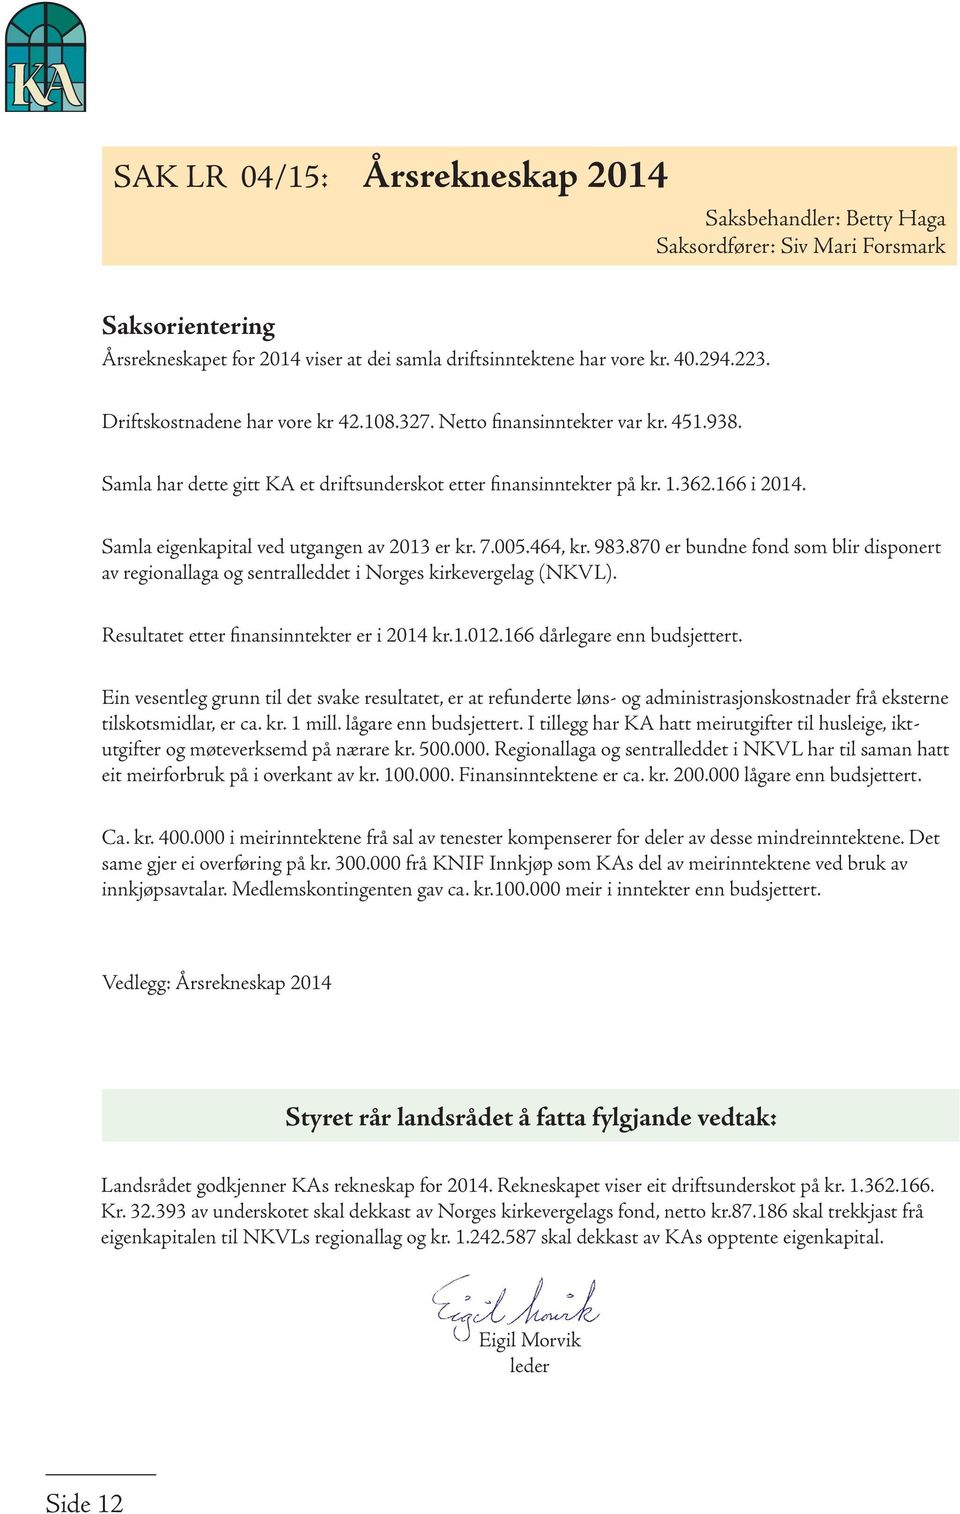 Samla eigenkapital ved utgangen av 2013 er kr. 7.005.464, kr. 983.870 er bundne fond som blir disponert av regionallaga og sentralleddet i Norges kirkevergelag (NKVL).